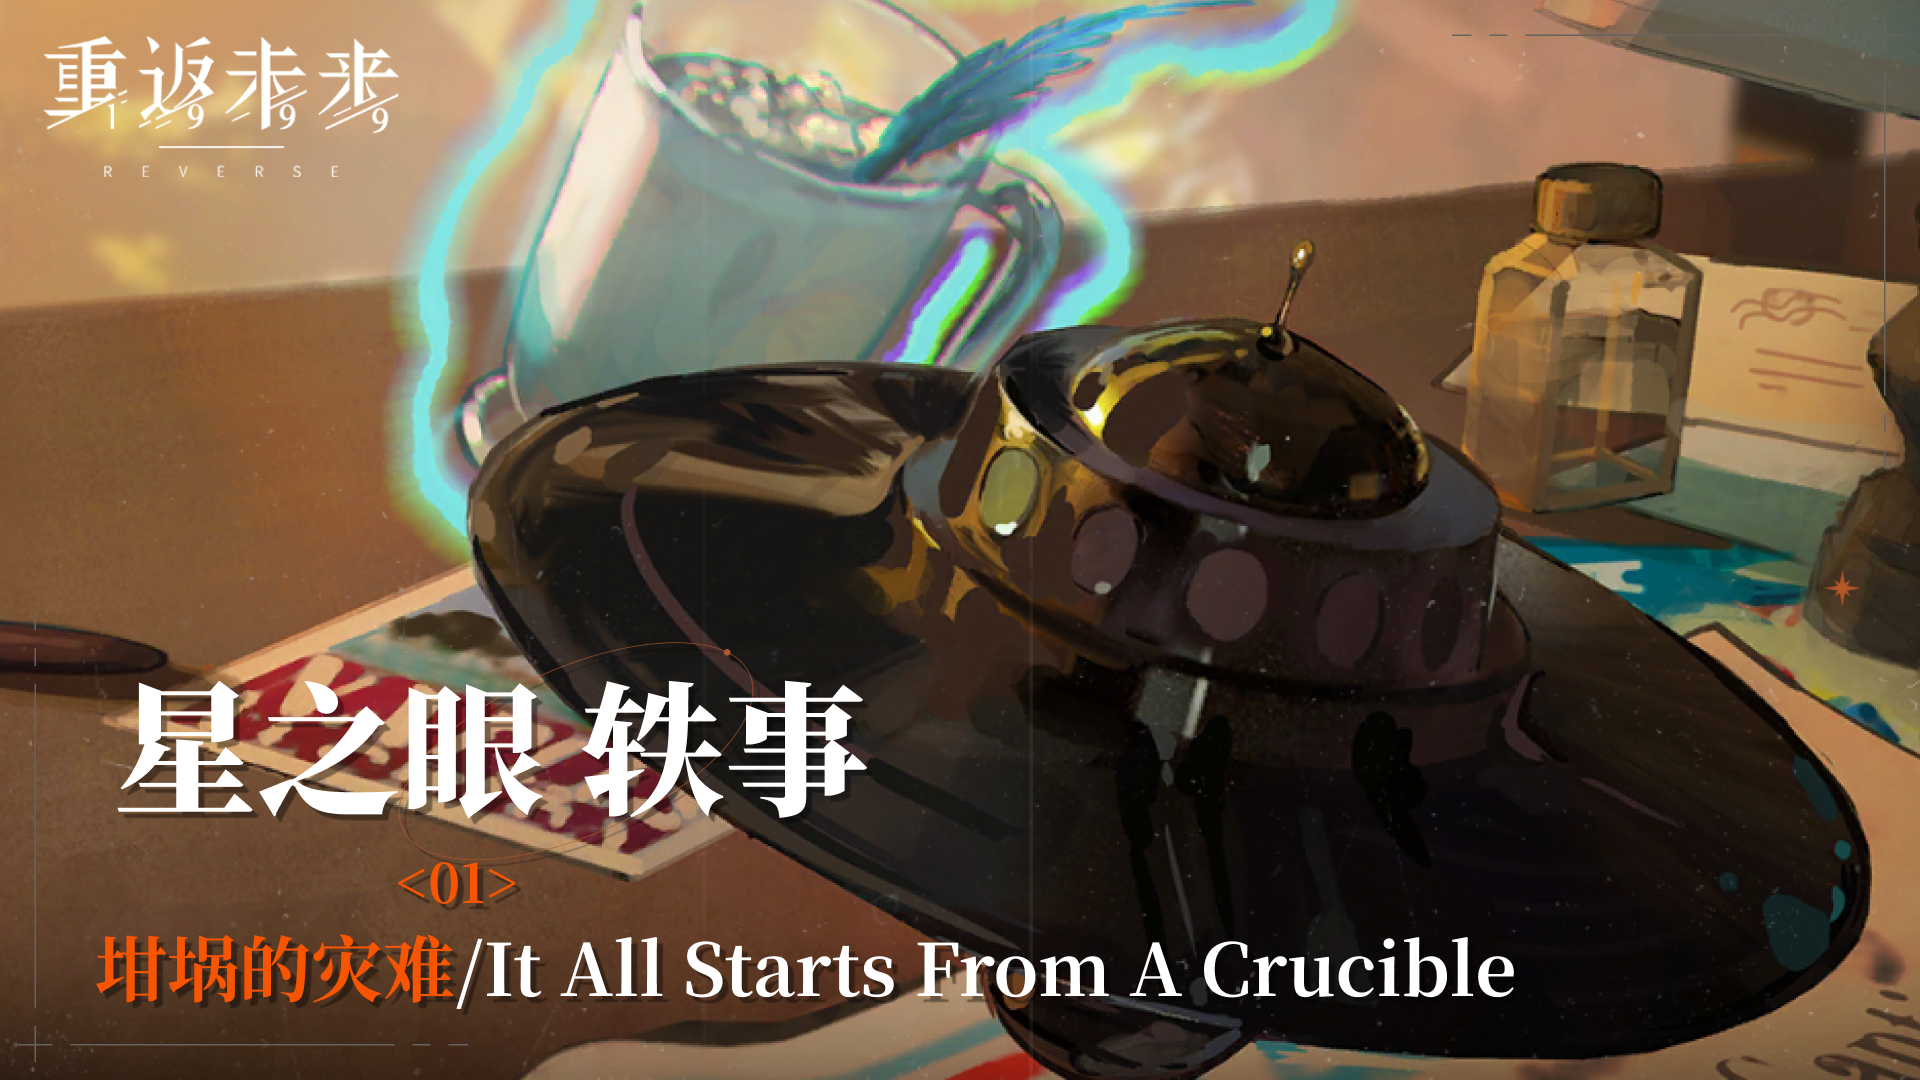 【星之眼轶事】01 坩埚的灾难/It All Starts From A Crucible